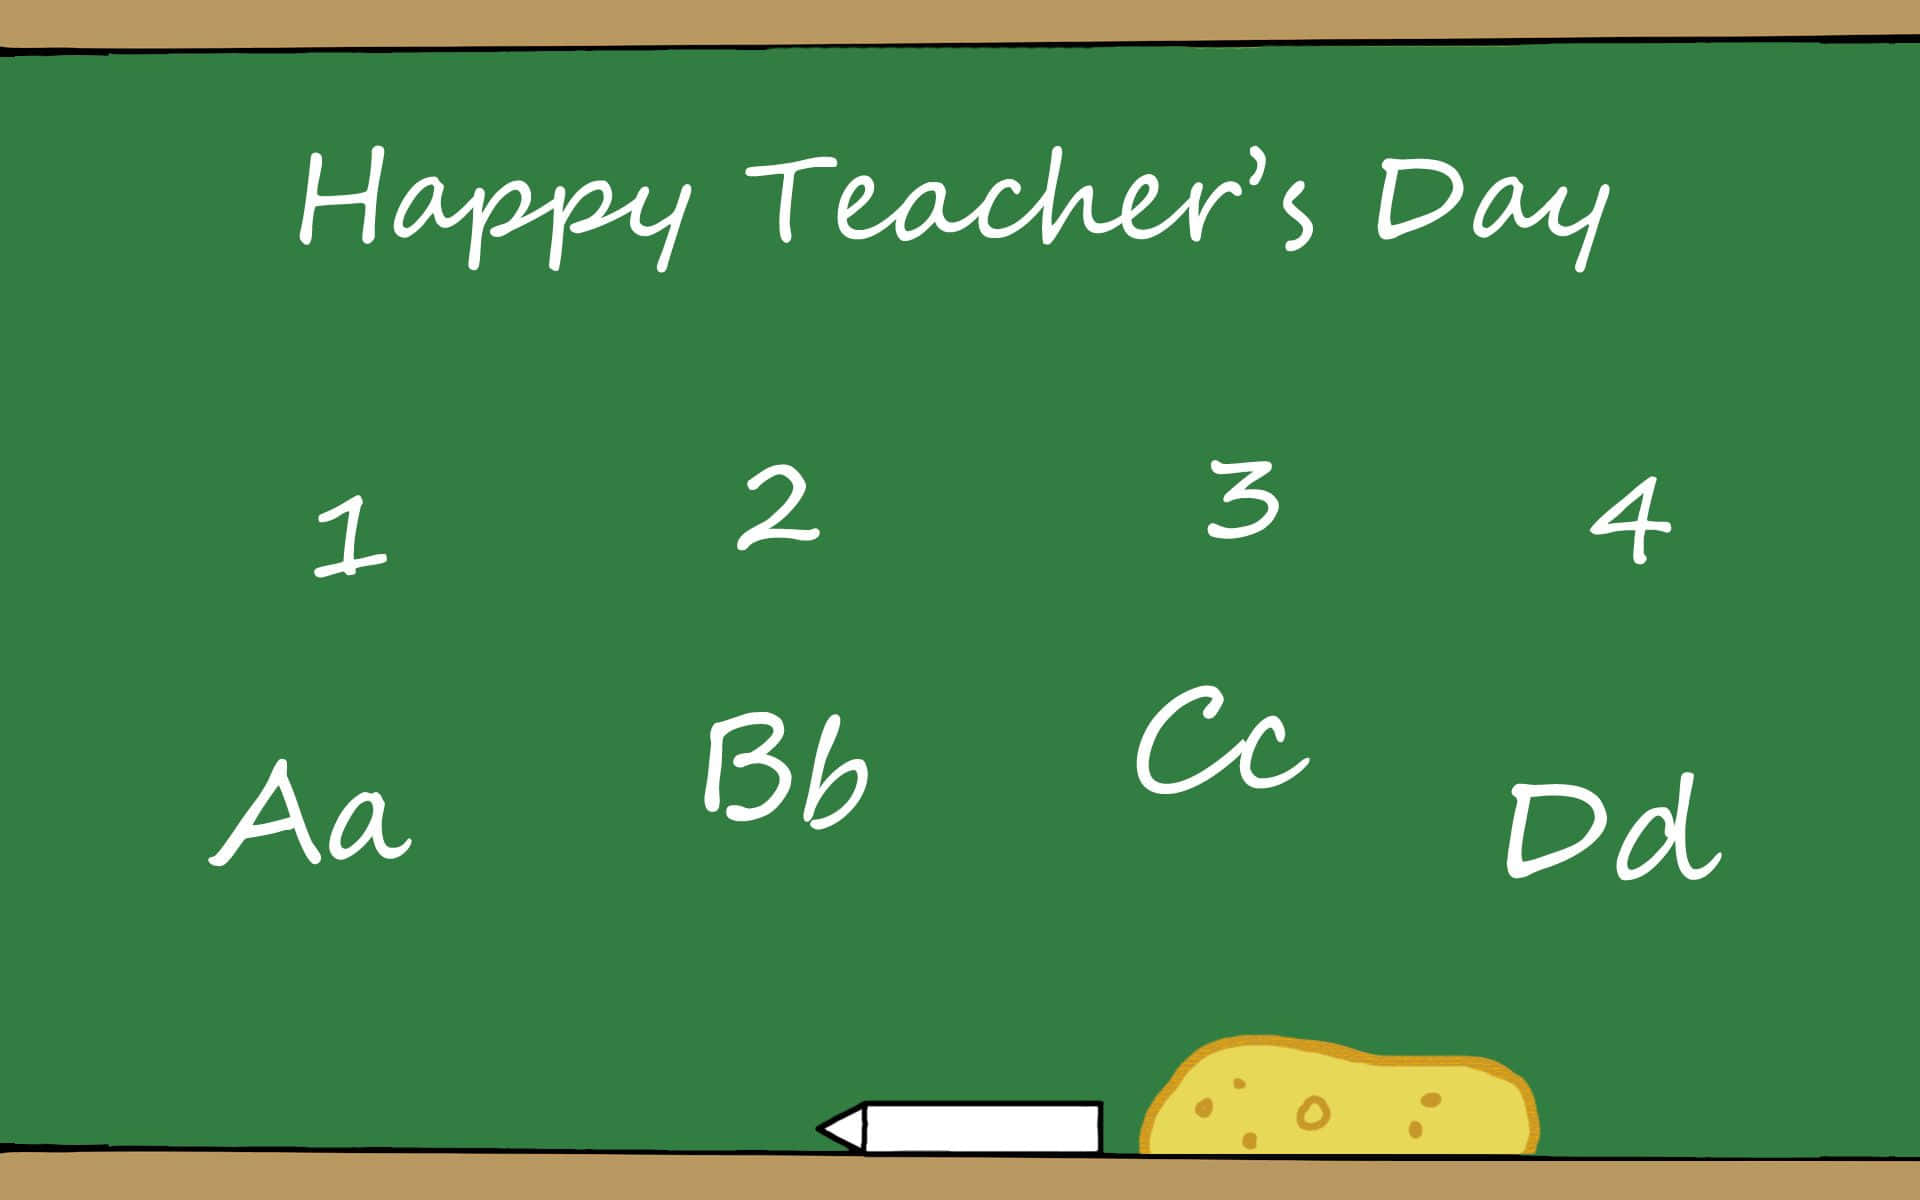 Happy Teachers Day - A Blackboard With A Chalkboard